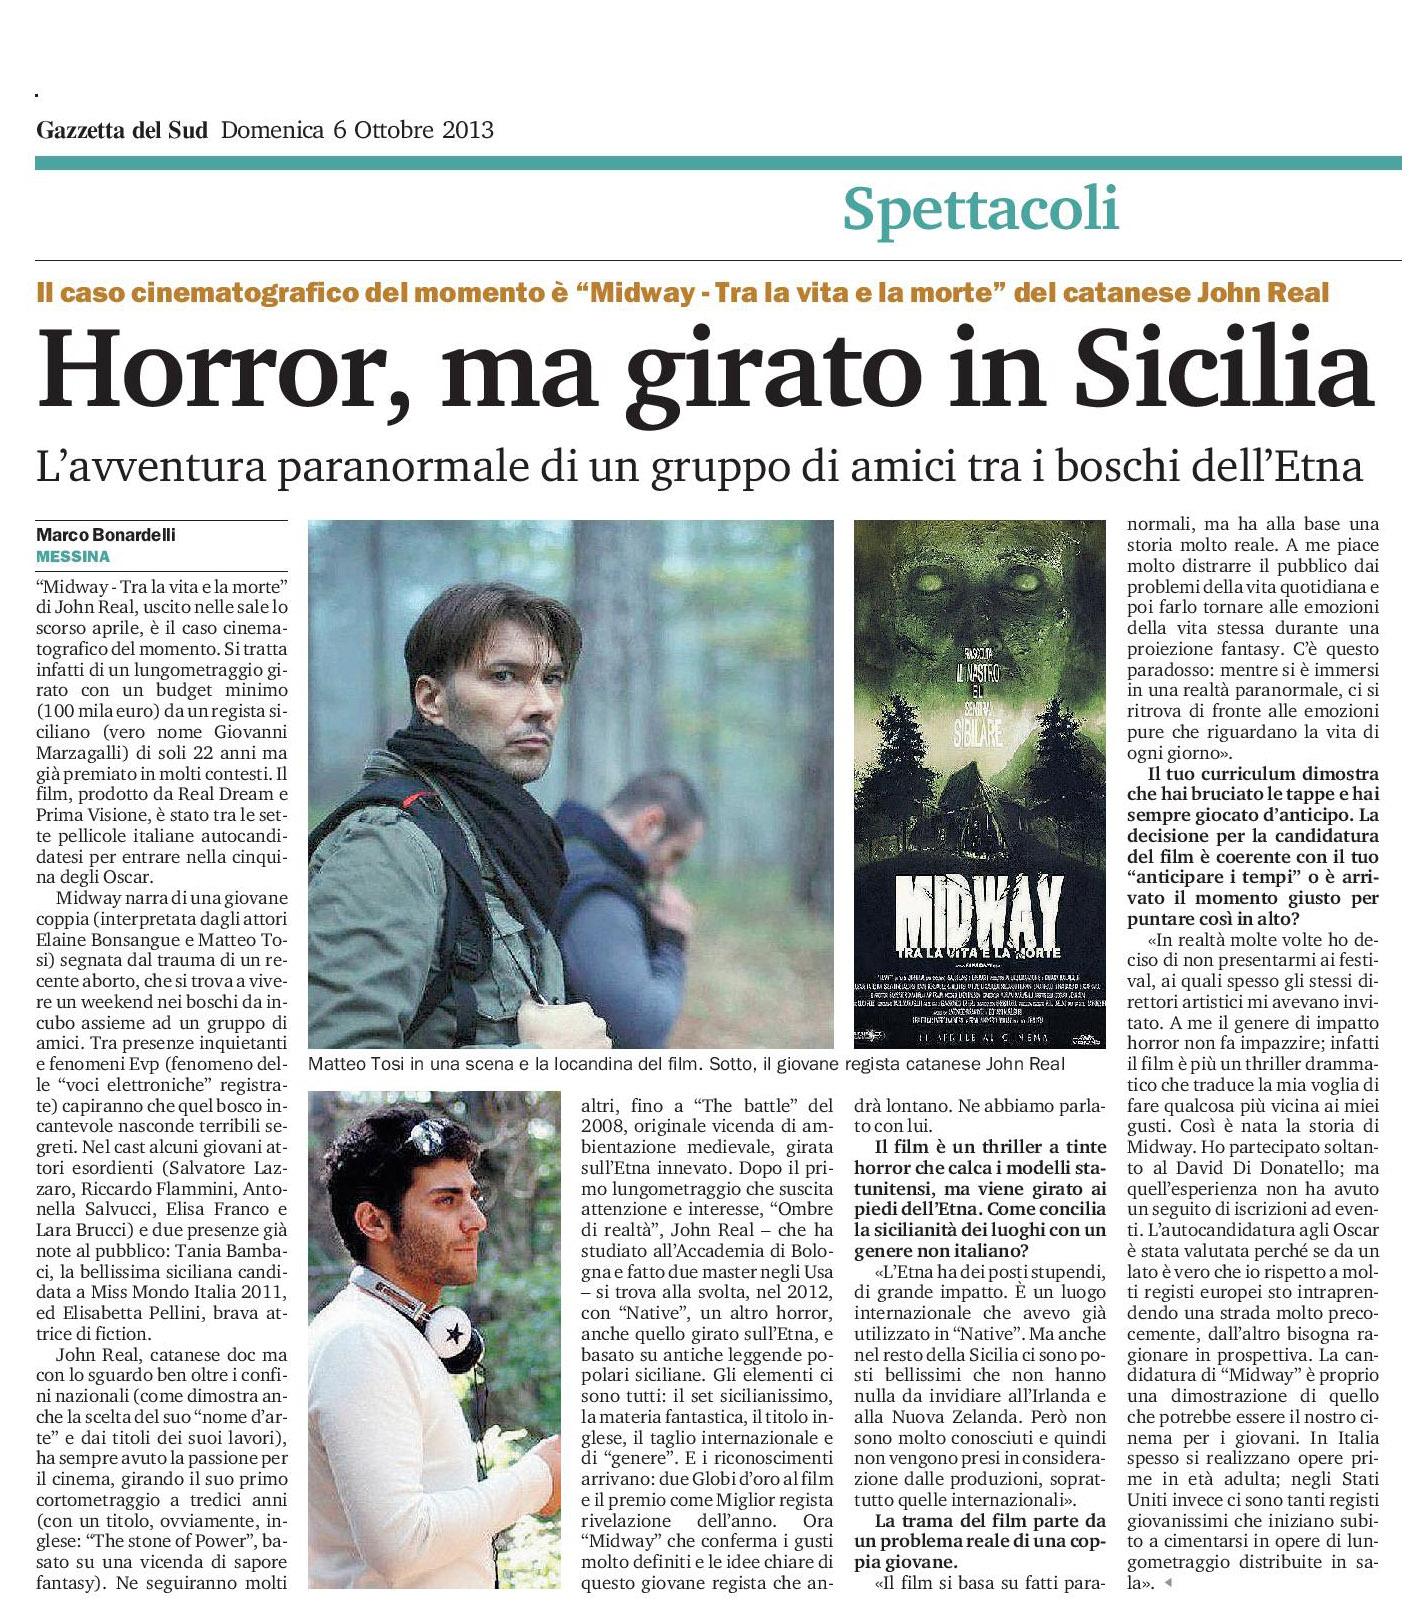 31_-_John_Real_-_Horror_ma_girato_in_Sicilia_-_Gazzetta_del_Sud_-_6_ottobre_2013.jpg